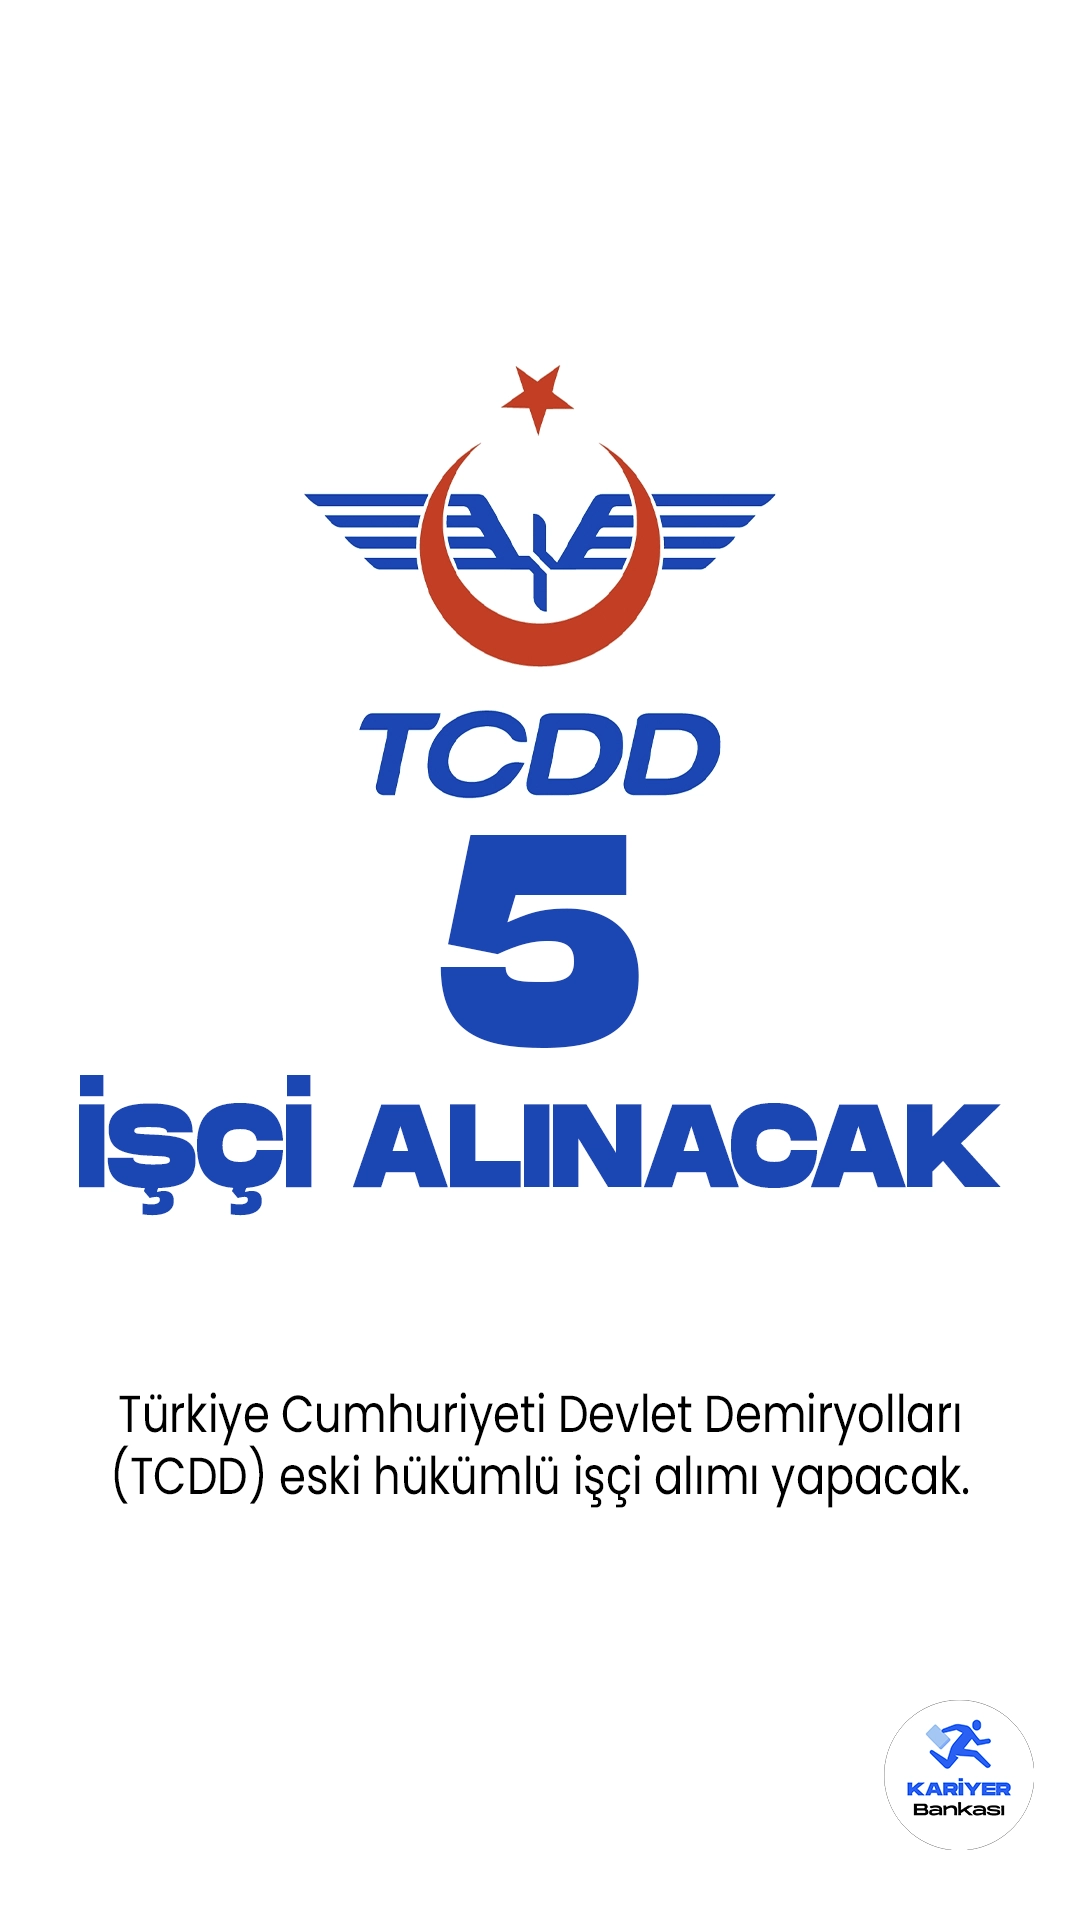 Türkiye Cumhuriyeti Devlet Demiryolları (TCDD) işçi alımı yapacak. Cumhurbaşkanlığı SBB'de yayımlanan duyuruda, TCDD'ye eski hükümlü olmak üzere 5 işçi alımı yapılacağı aktarıldı.